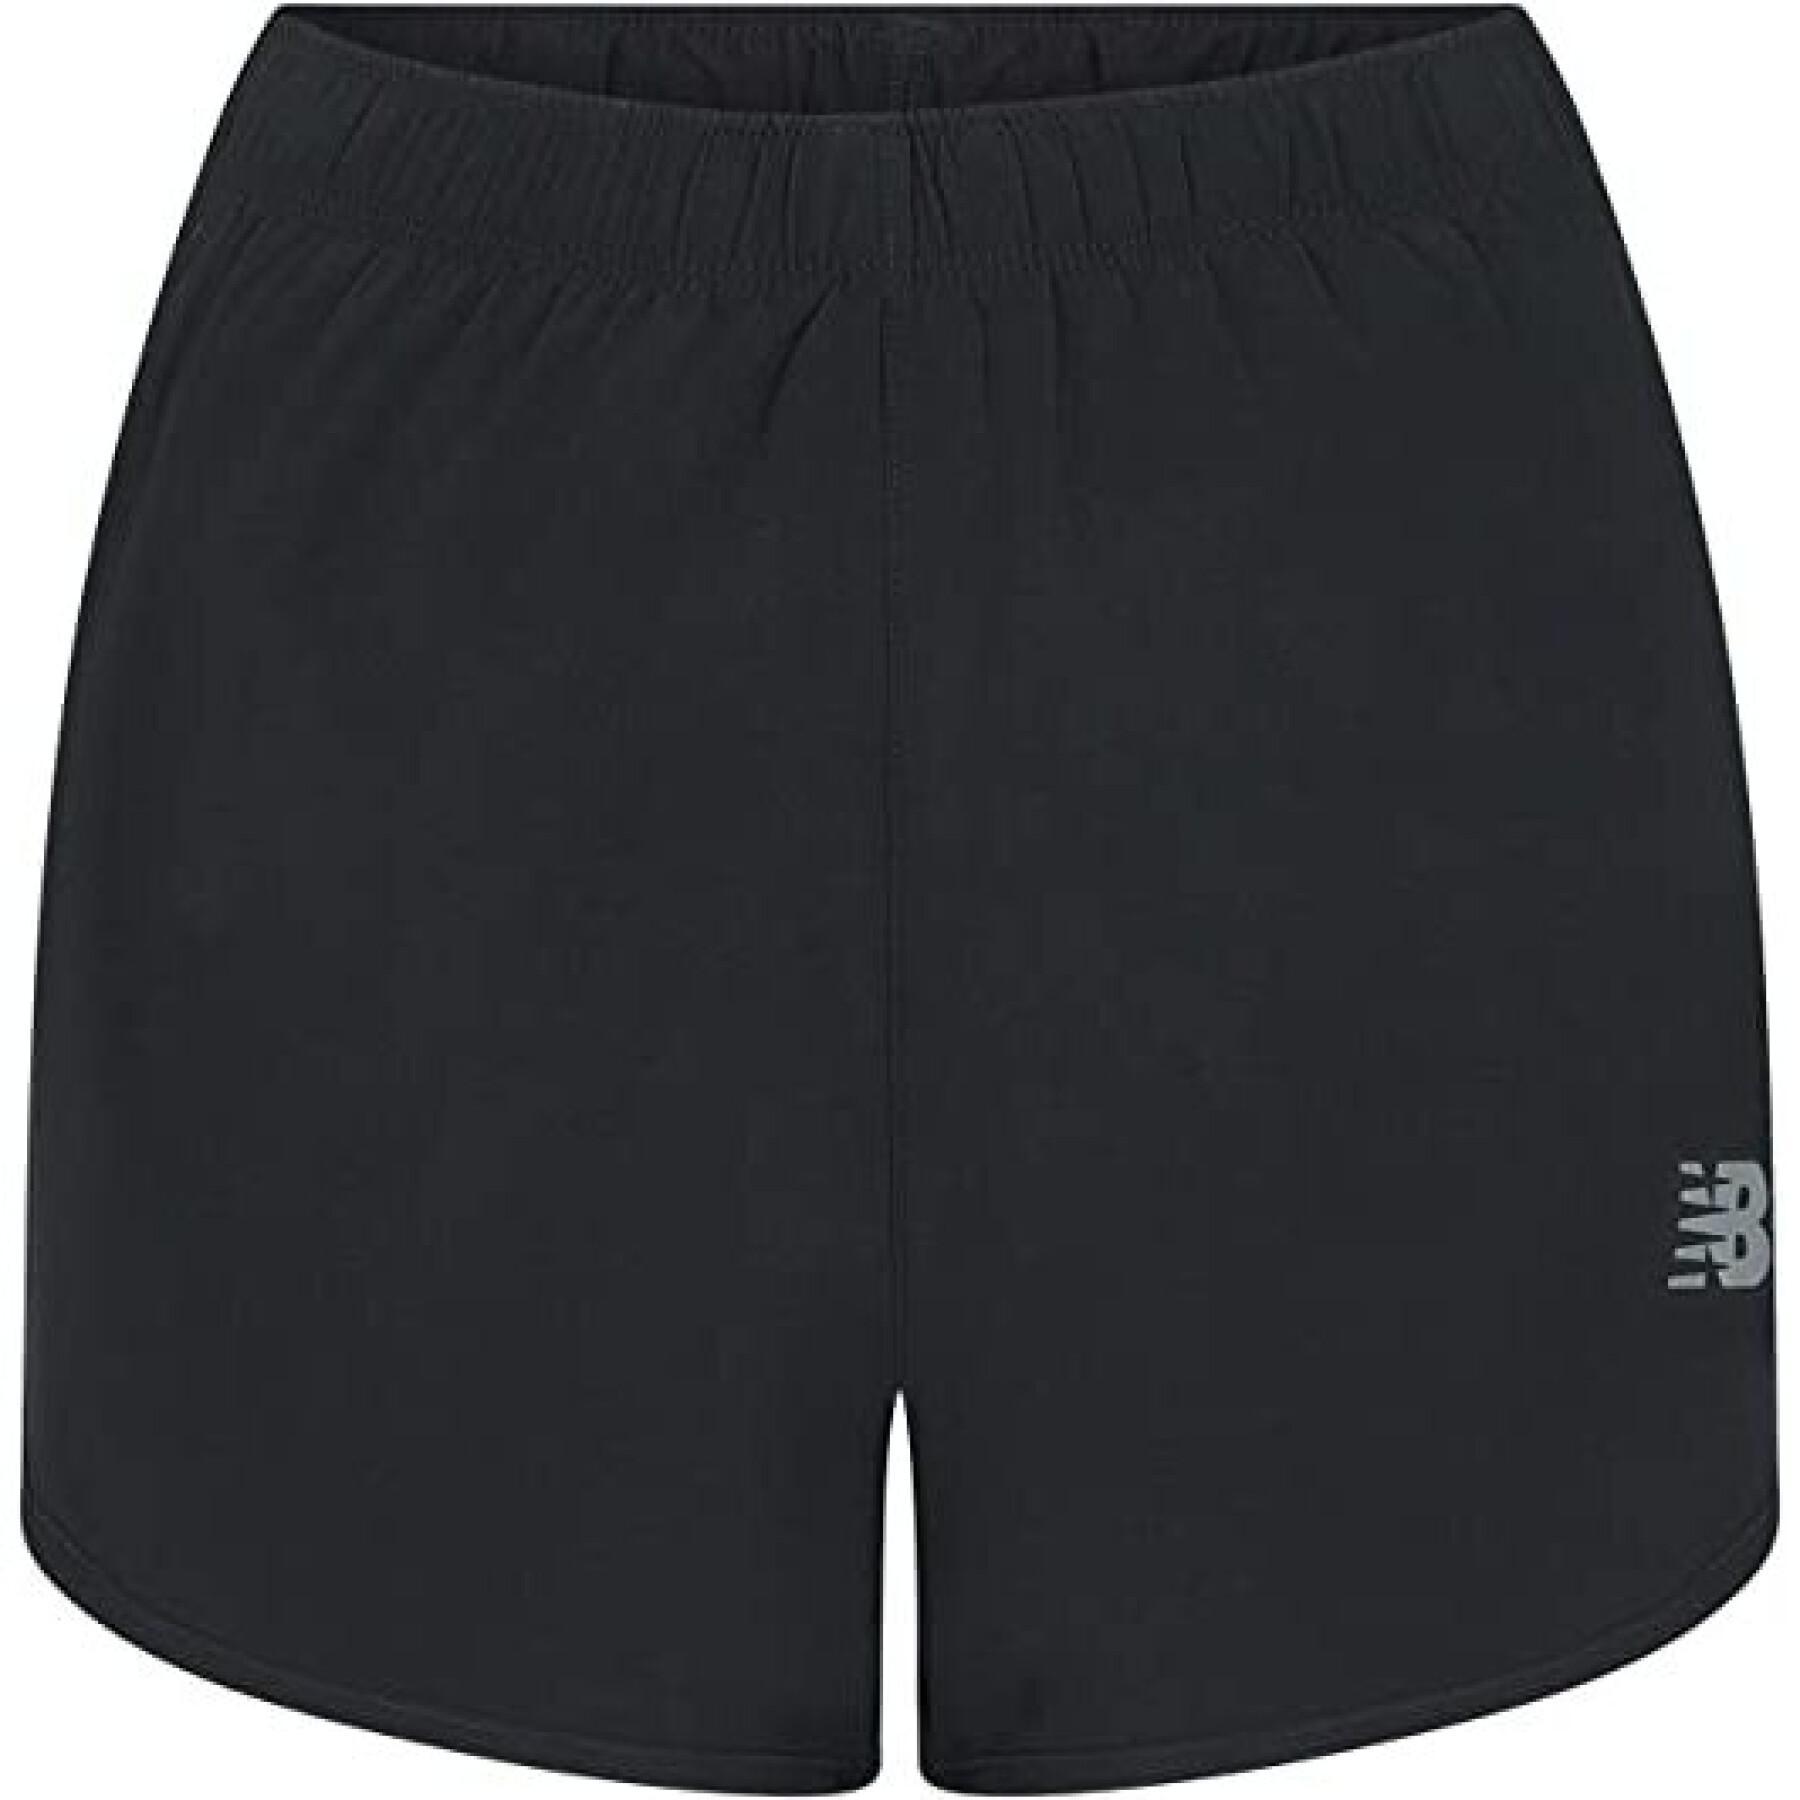 Pantalones cortos de mujer 2en1 New Balance Core 3 "